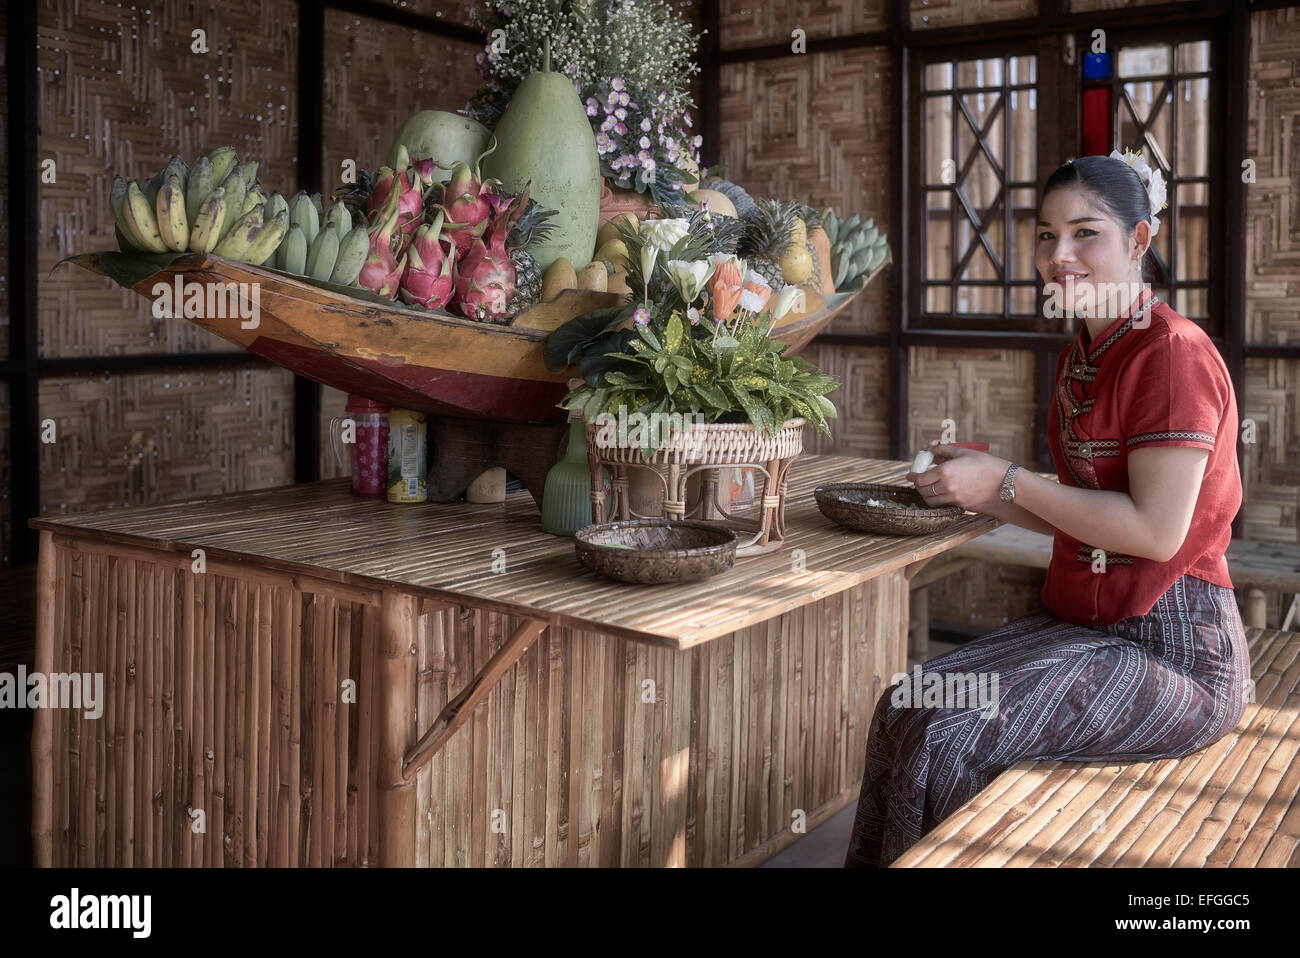 Thailandia artigianato industria. Donna in abito tradizionale con frutta e fiori esposti in un centro artistico e culturale thailandese. Thailandia S. E. Asia Foto Stock